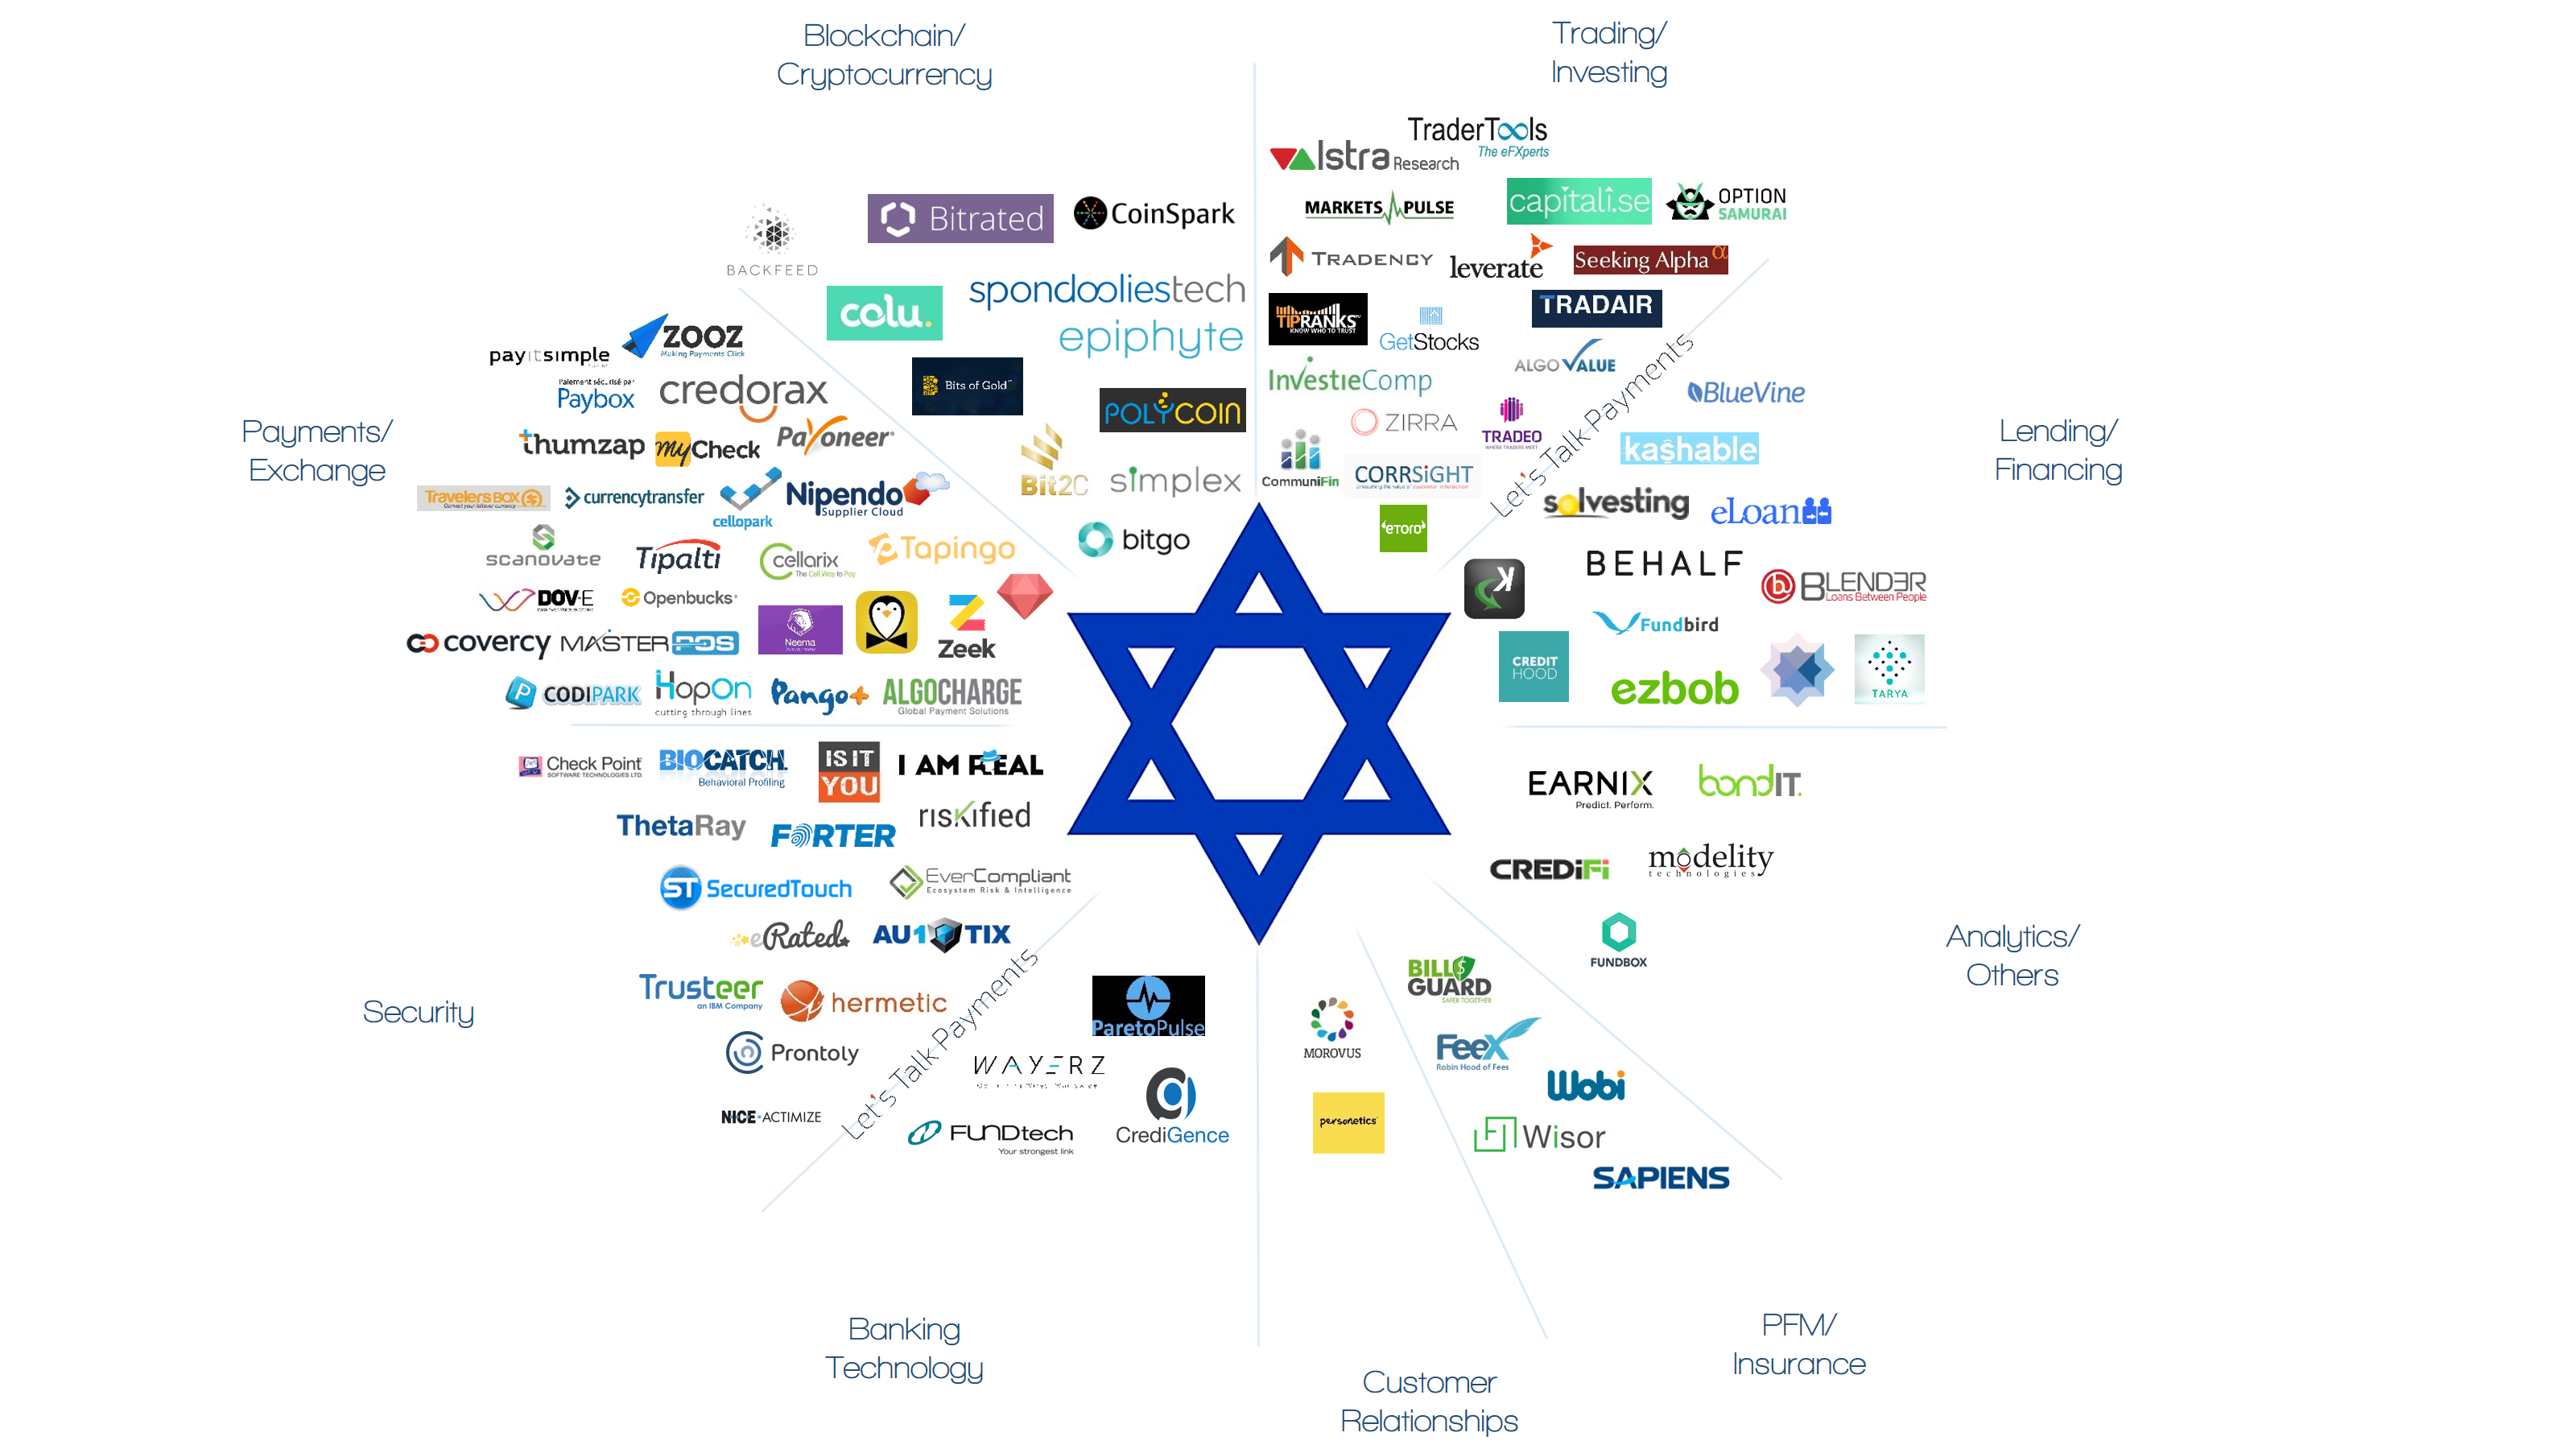 18 Israeli fintech companies that Swing financial